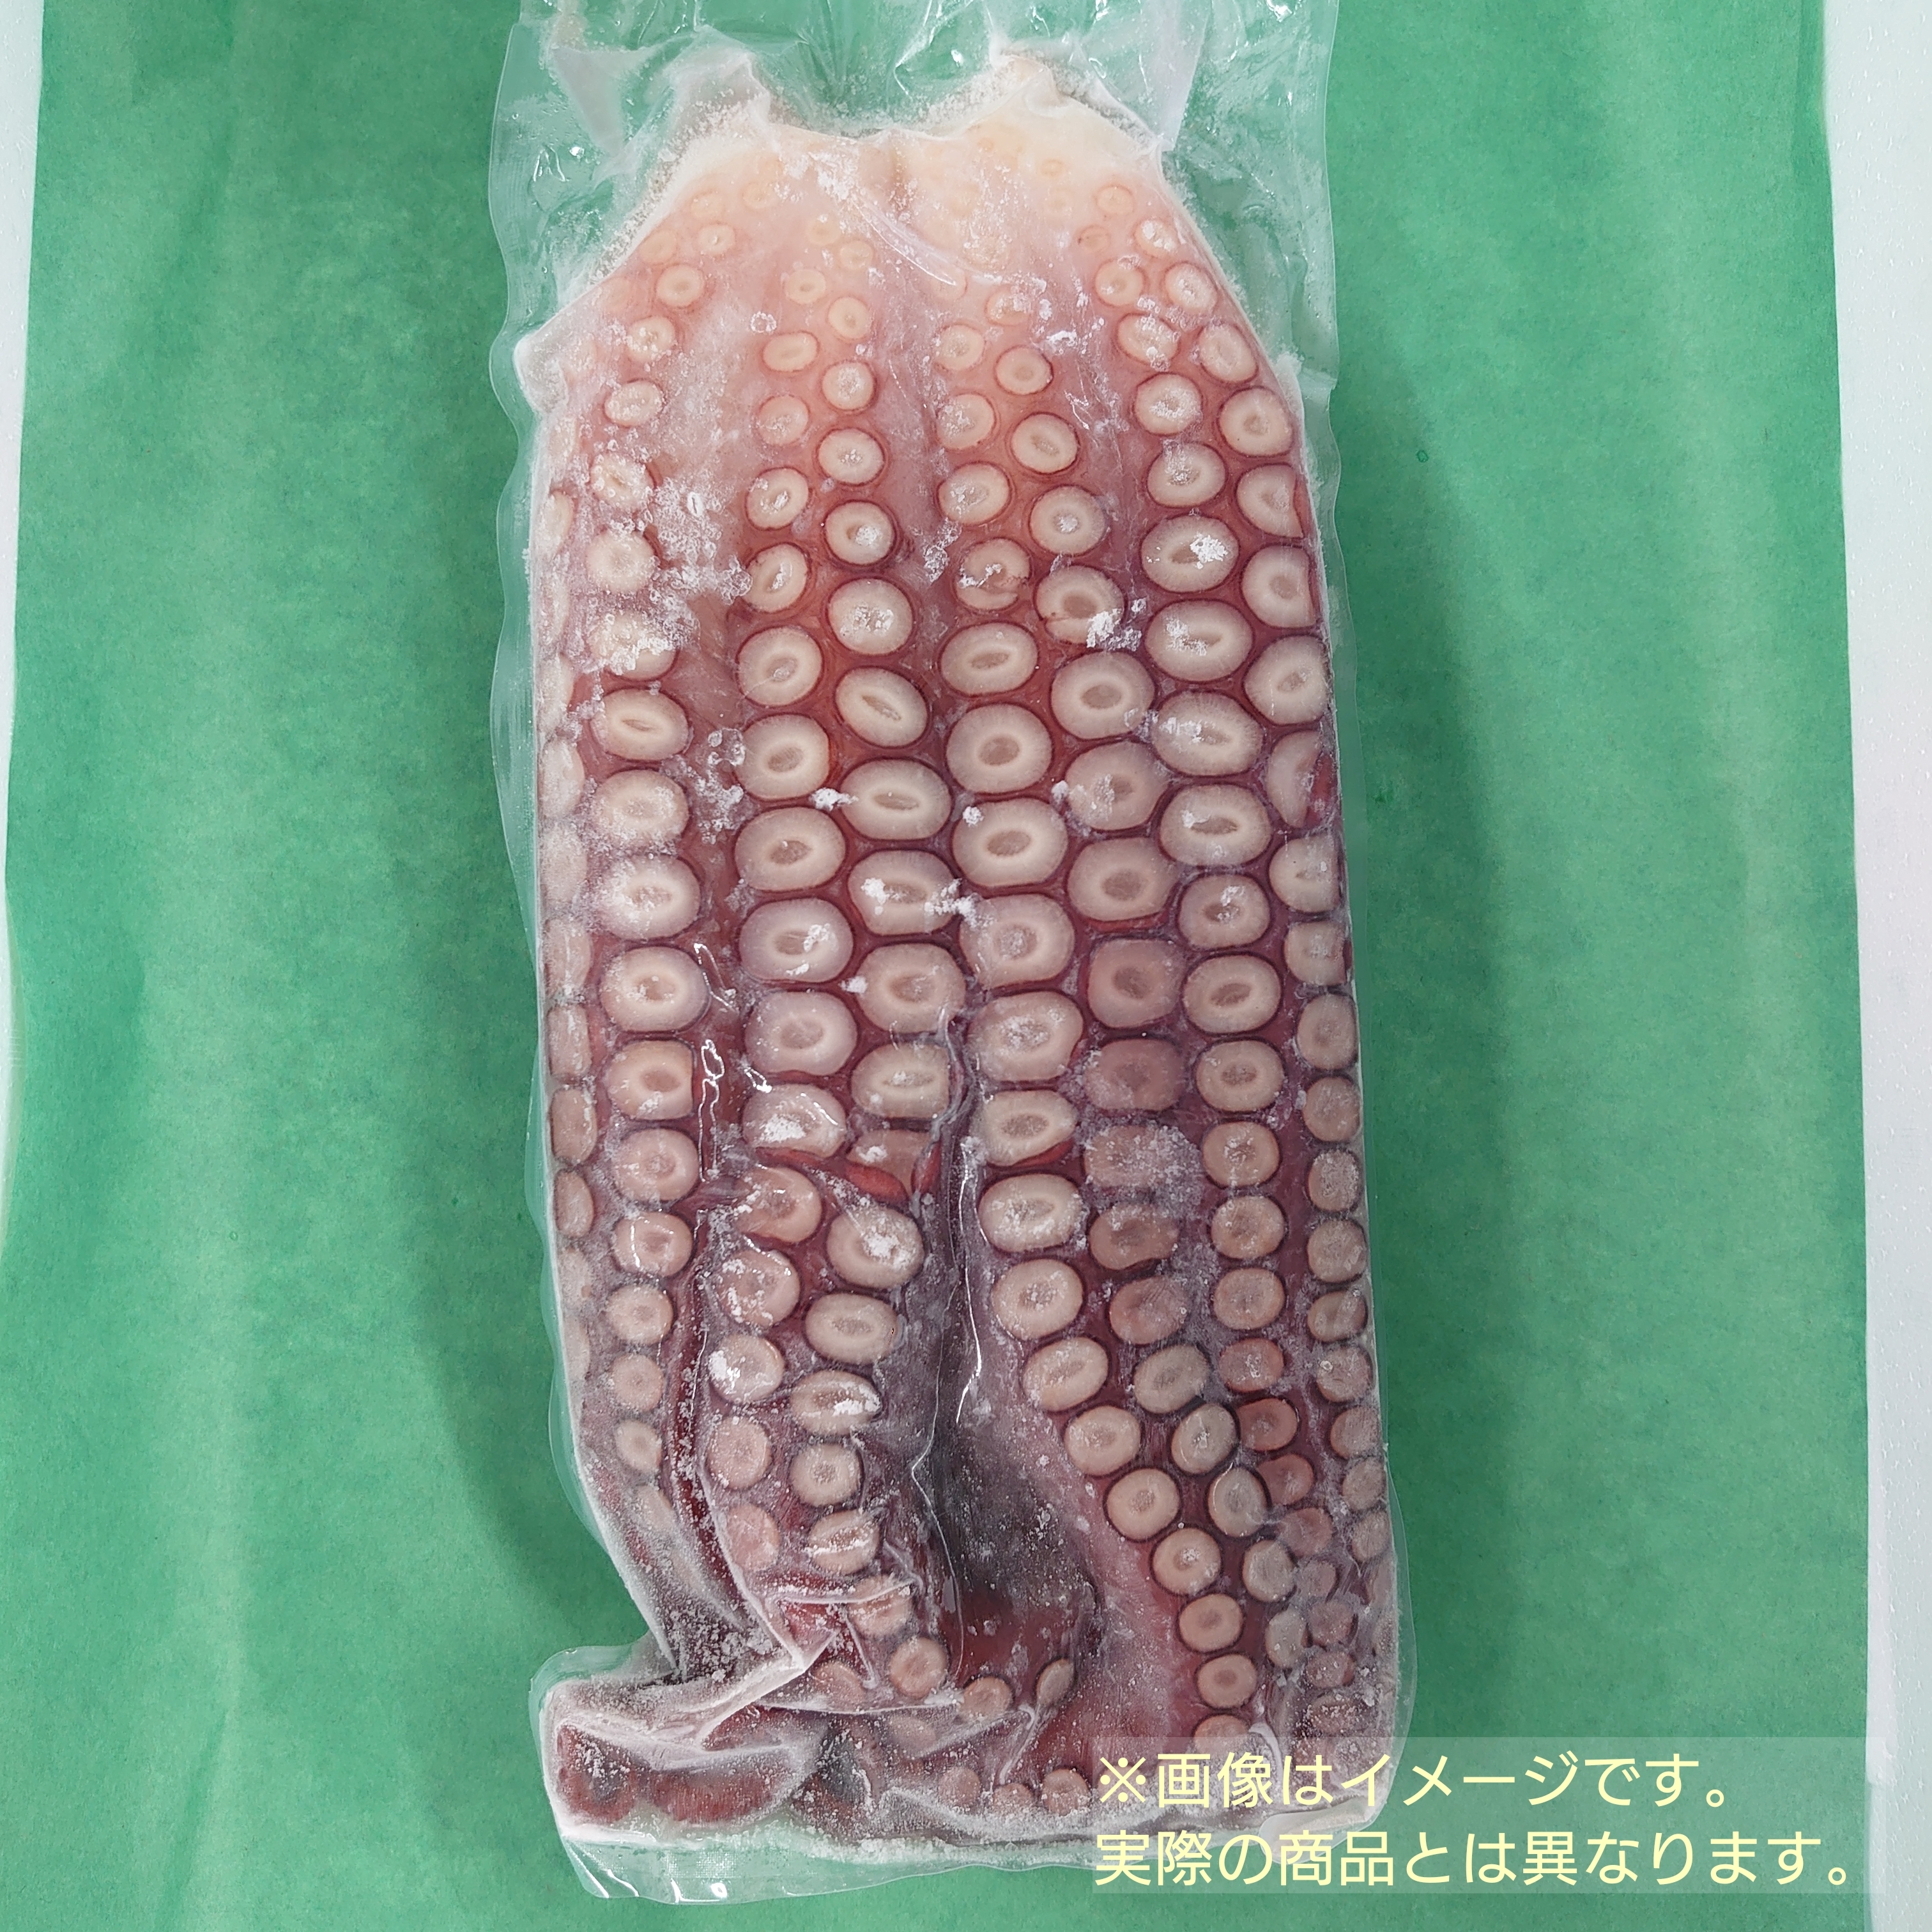 16740円 【ついに再販開始！】 冷凍ボイル真蛸国内加工 10kg 14〜20尾